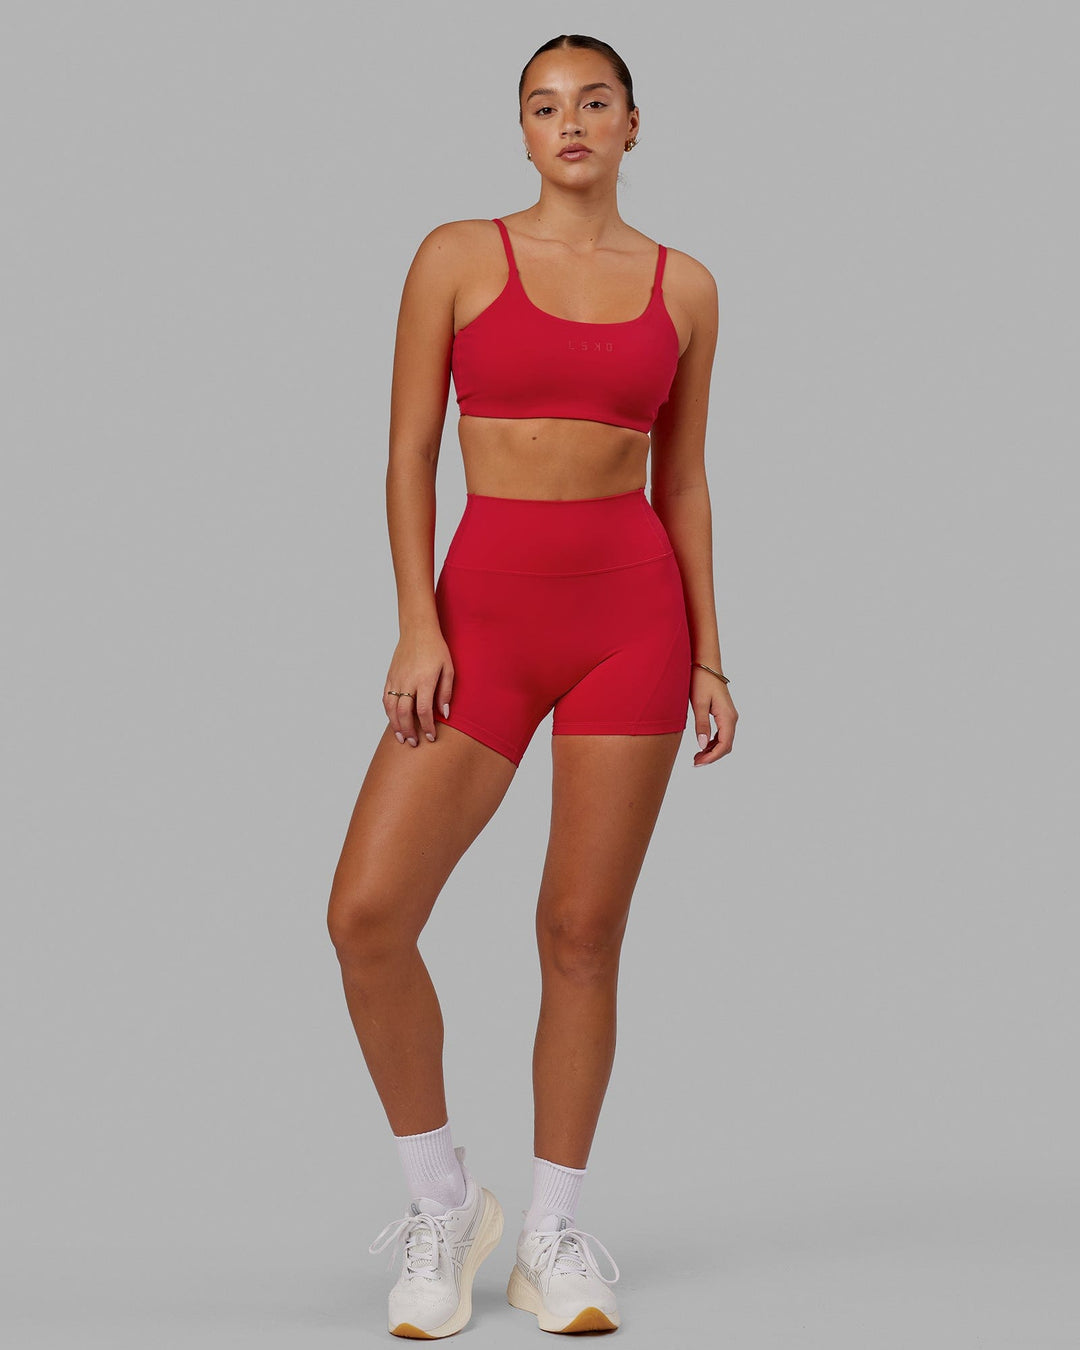 Woman wearing Twist Sports Bra - Scarlet